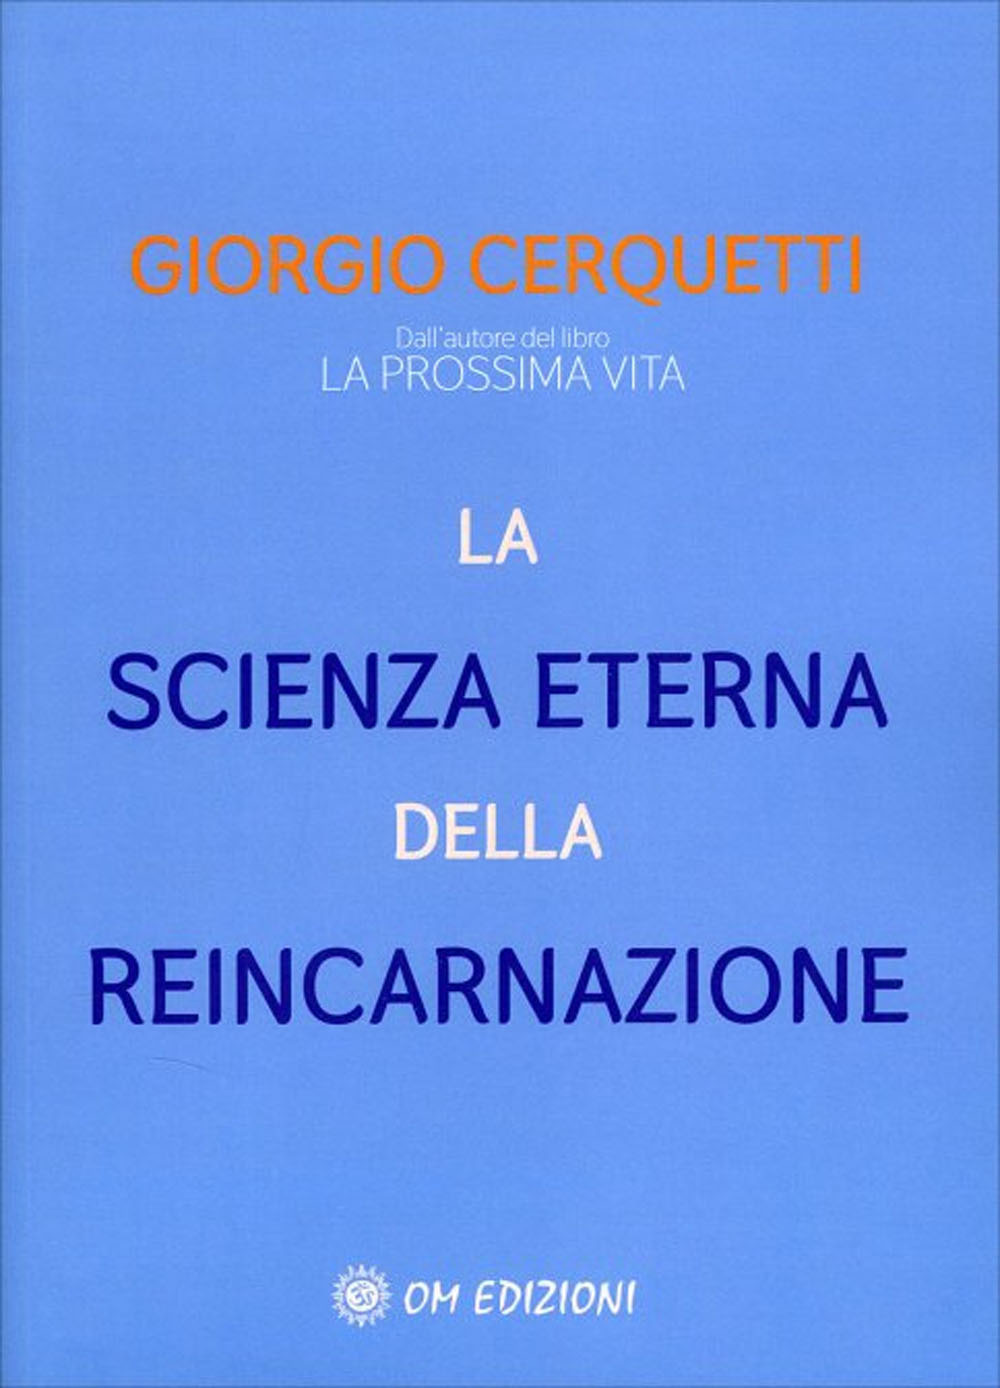 Libri Giorgio Cerquetti - La Scienza Eterna Della Reincarnazione NUOVO SIGILLATO, EDIZIONE DEL 02/12/2021 SUBITO DISPONIBILE